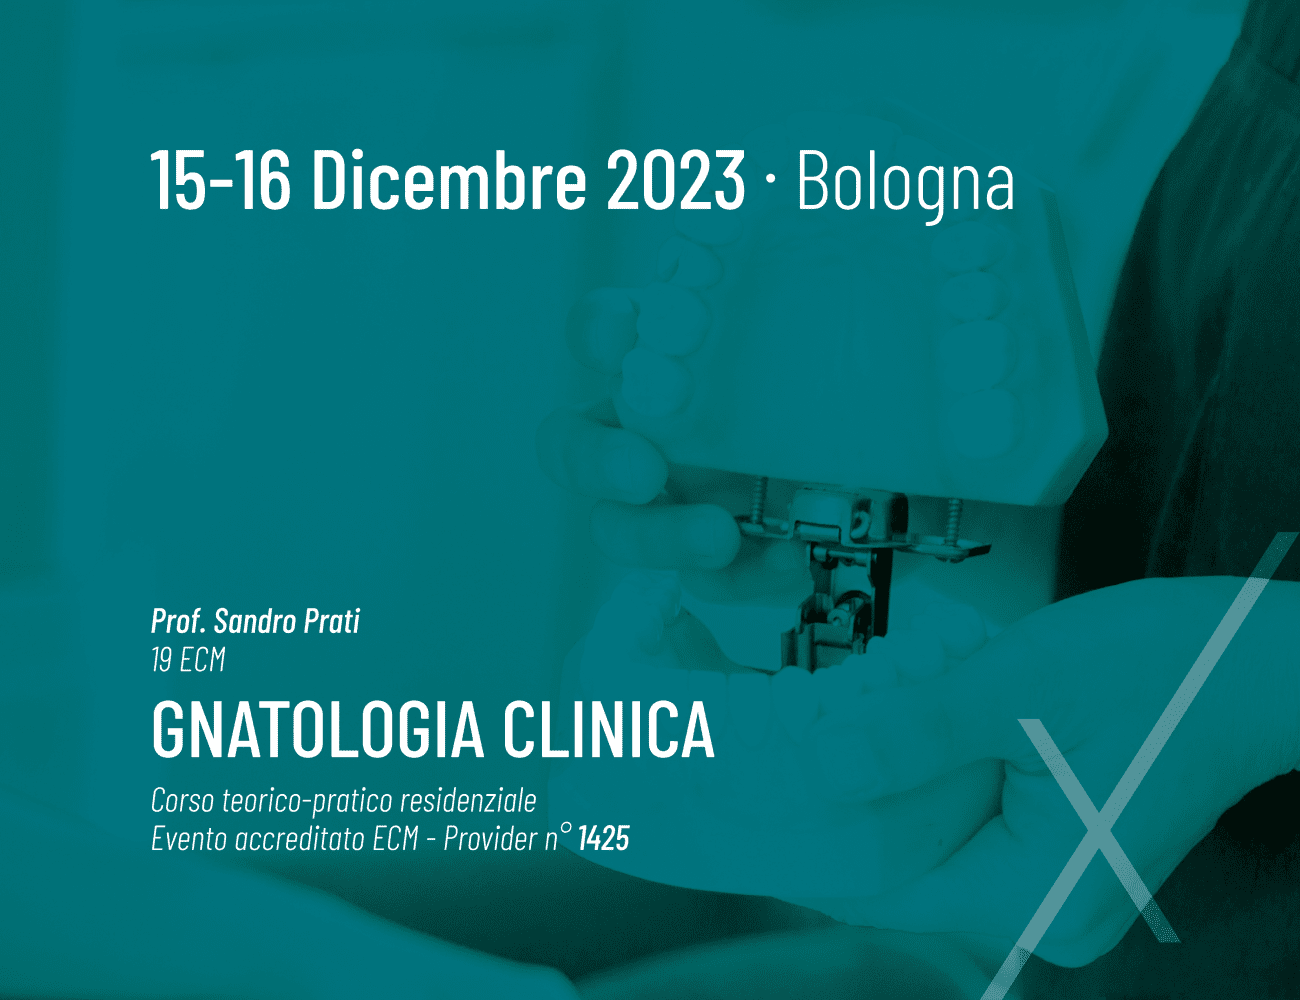 Locandina Corso accreditato di gnatologia clinica Prof. Sandro Prati - 19 ecm 15-16 dicembre 2023 - Nexxta Bologna